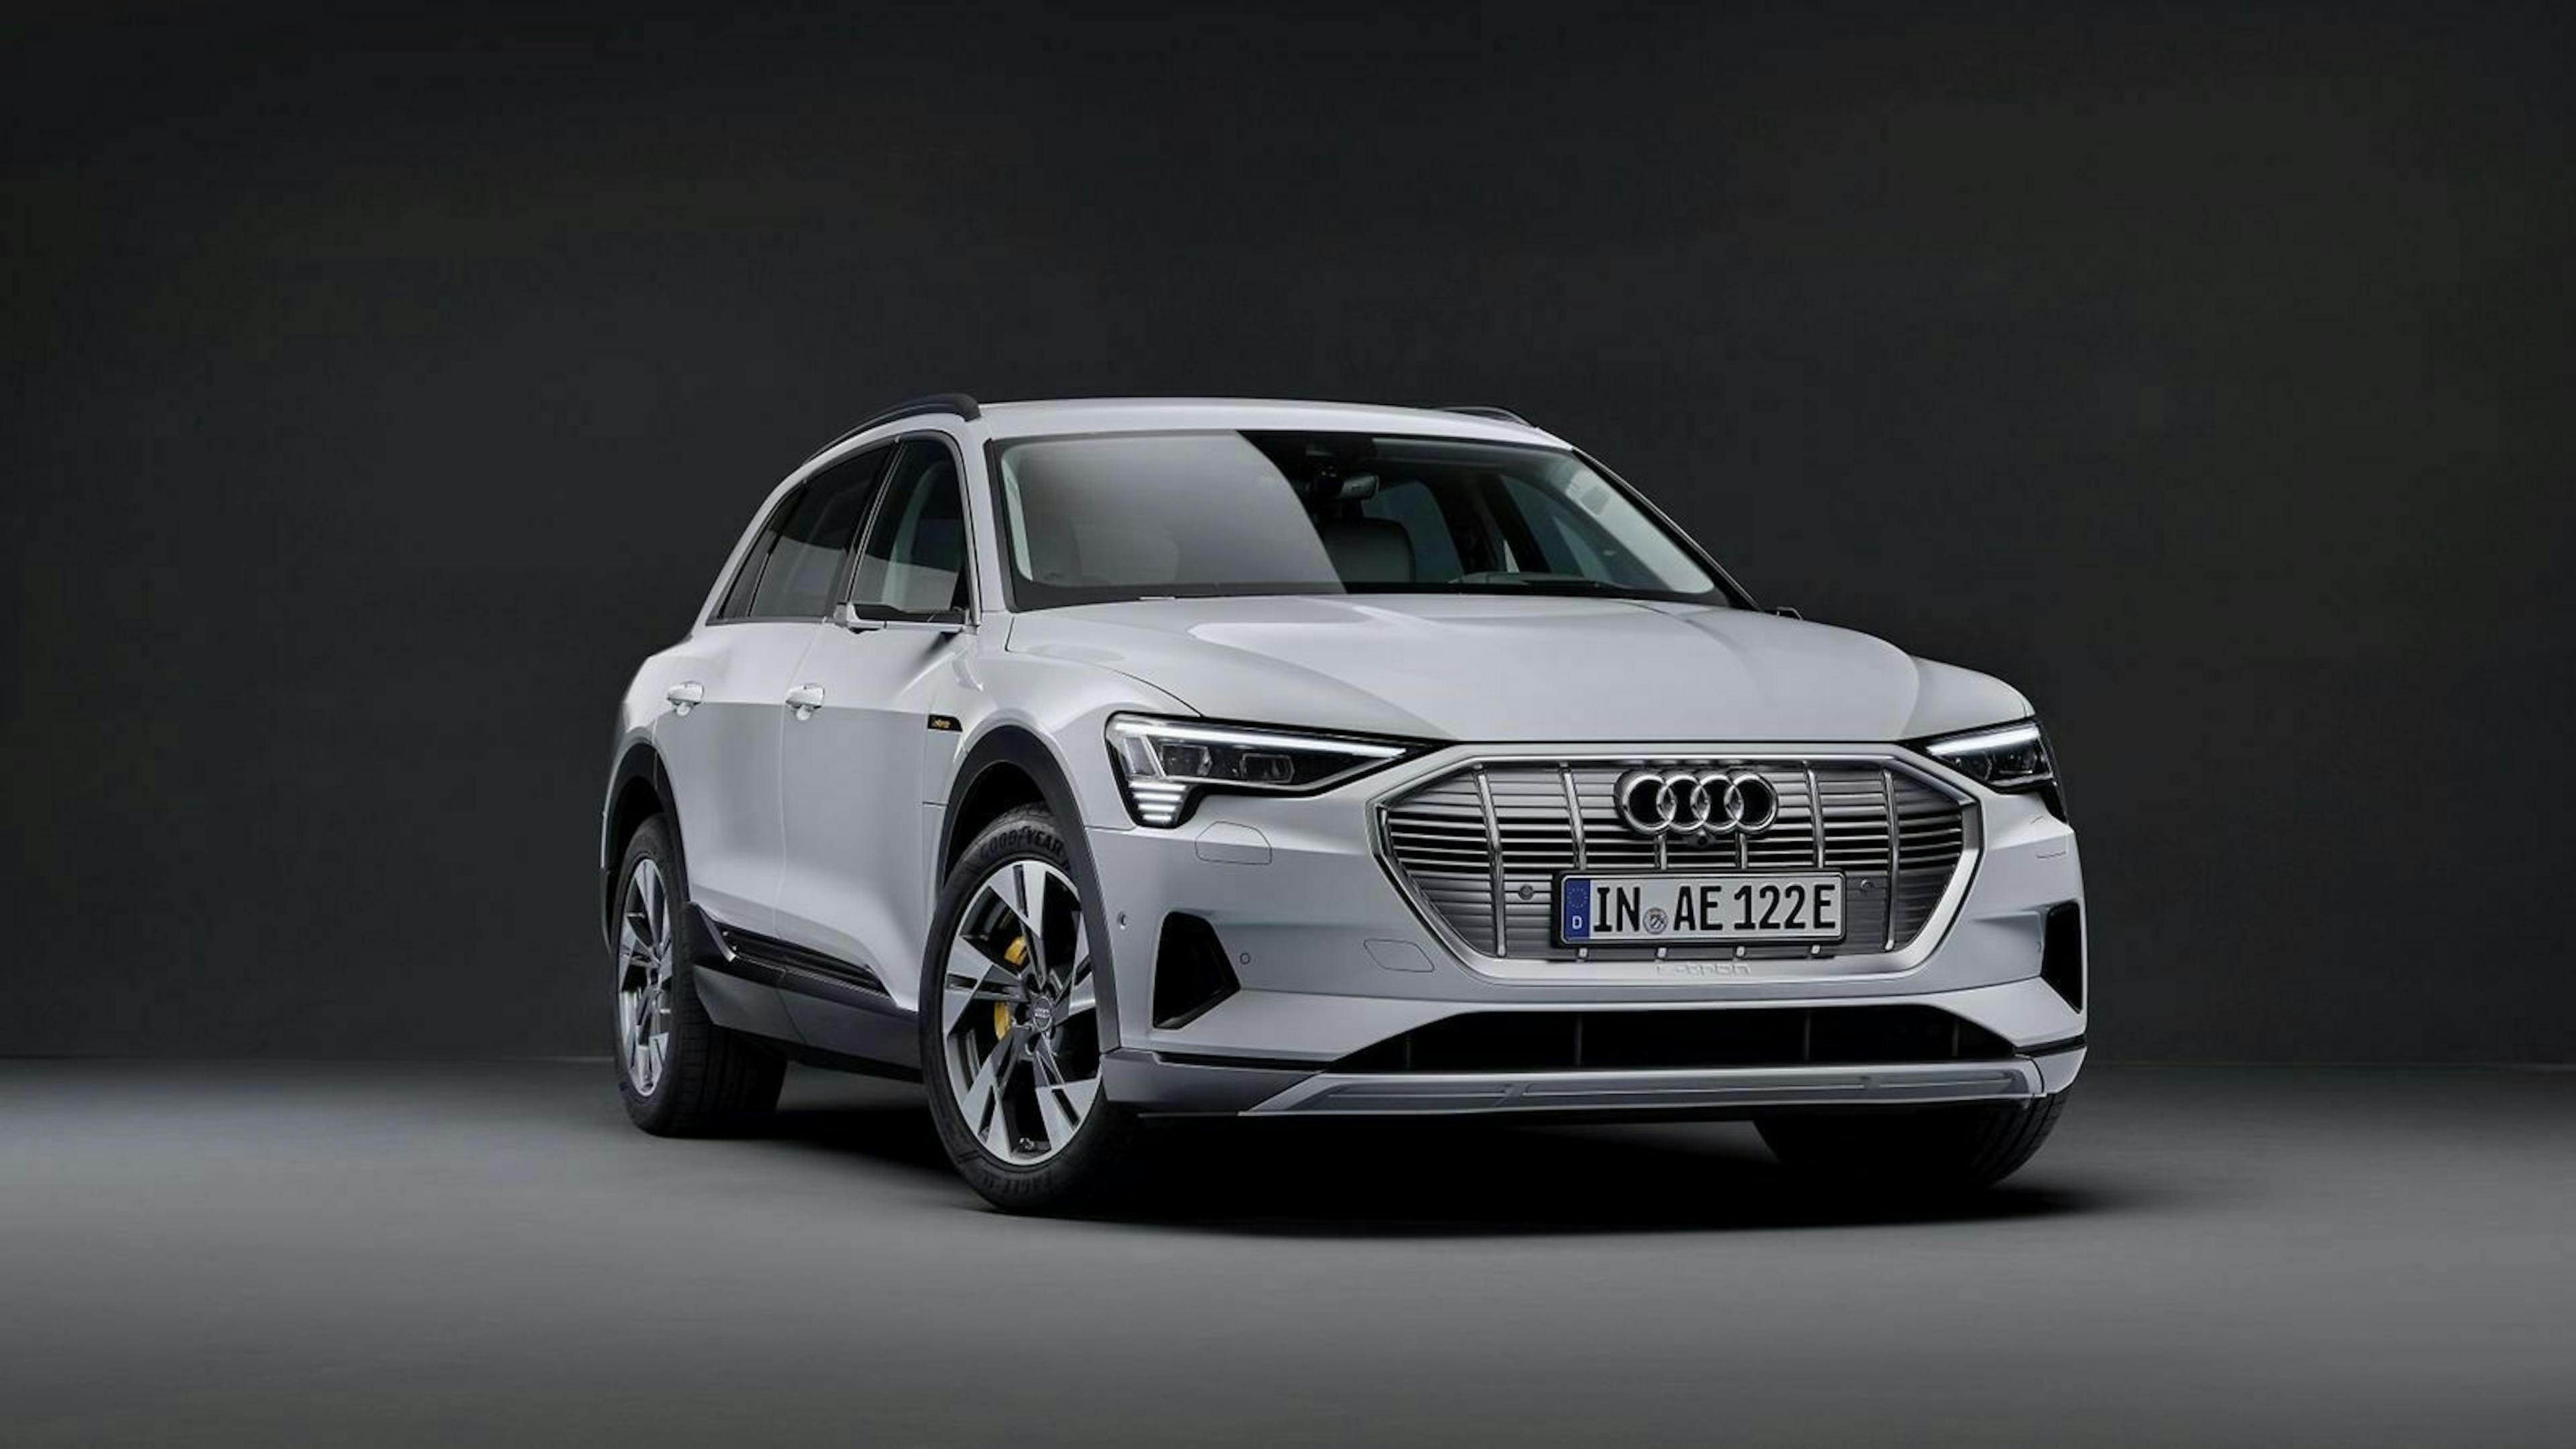 Audi verbaut beim E-Tron 50 digitale Rückspiegel. So sinkt der cw-Wert und damit auch der Stromverbrauch